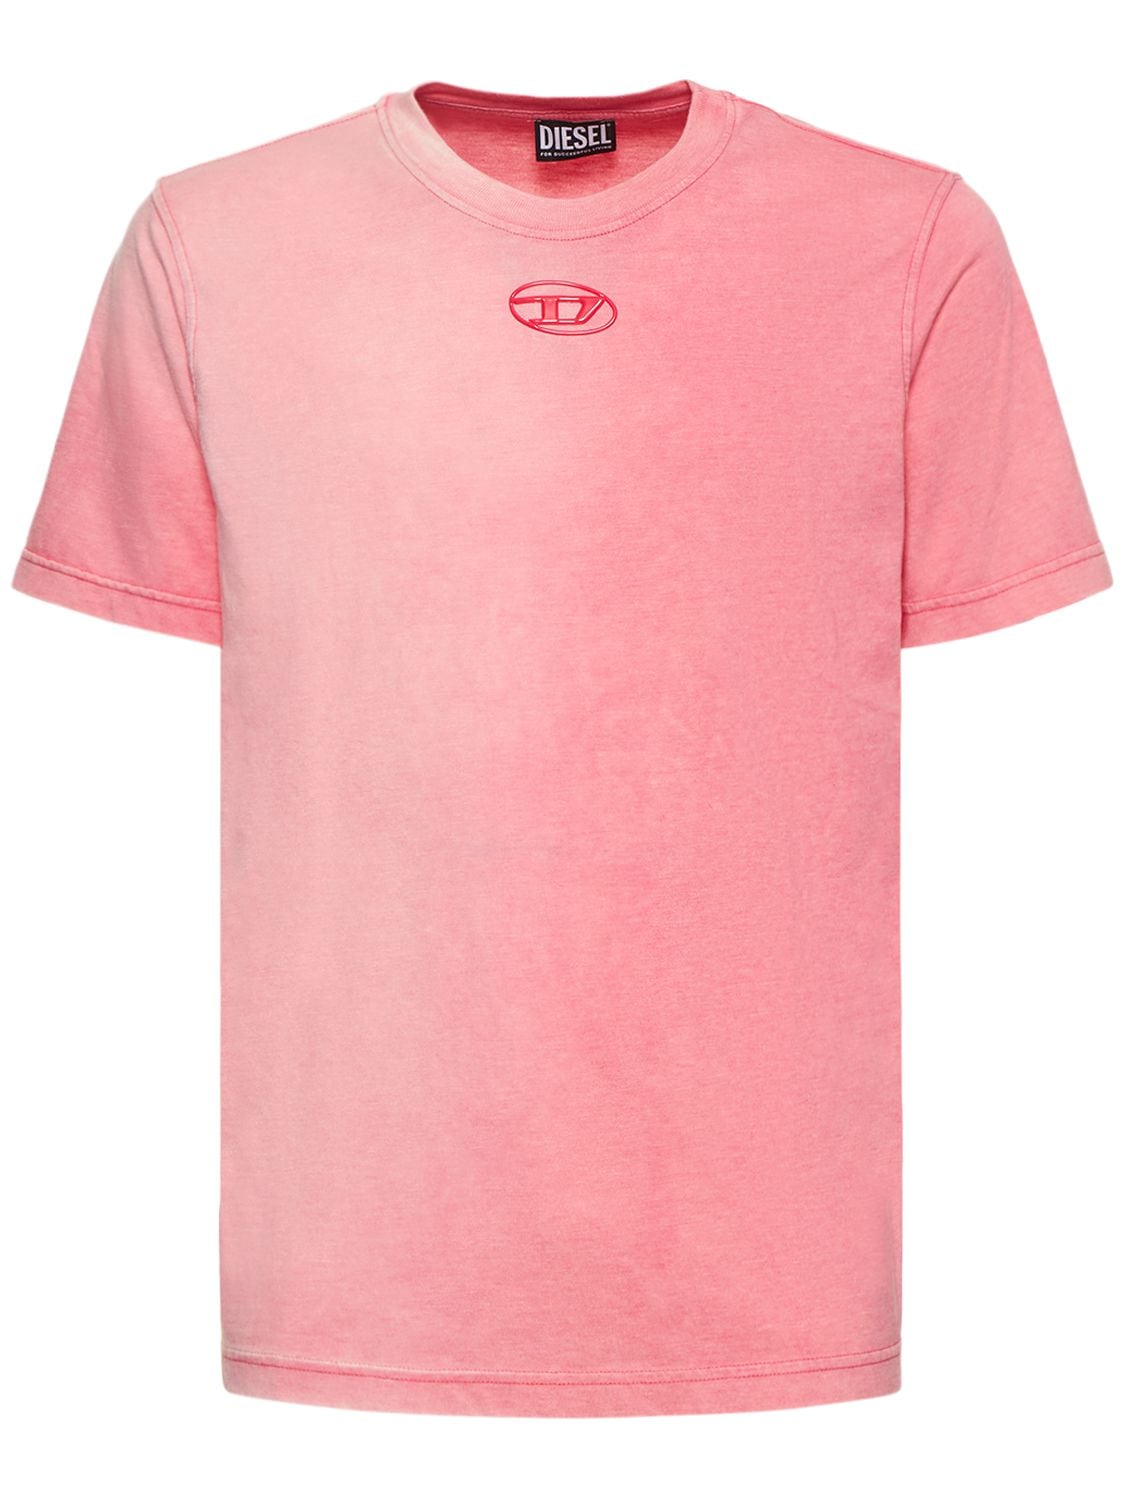 T-shirt Oval-d In Misto Cotone Con Stampa - DIESEL - Modalova